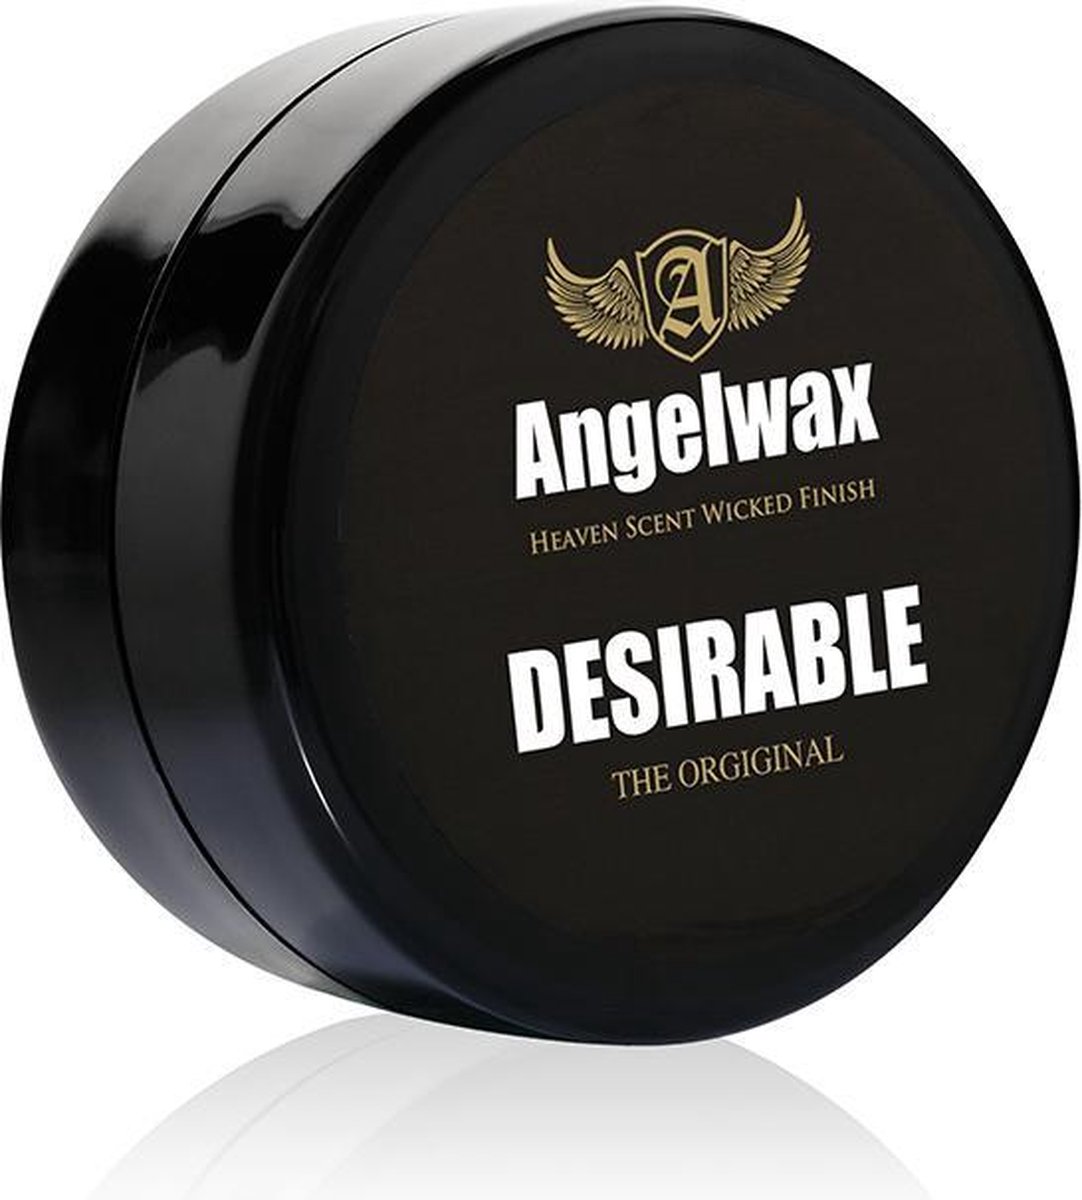 Angelwax Desirable 33ml - showcar Carnauba paste wax - Deze ultieme, handgemaakte wax is zo ontwikkeld dat de unieke waxformule puur is bedoeld voor ongeëvenaarde glans met de beste bescherming.